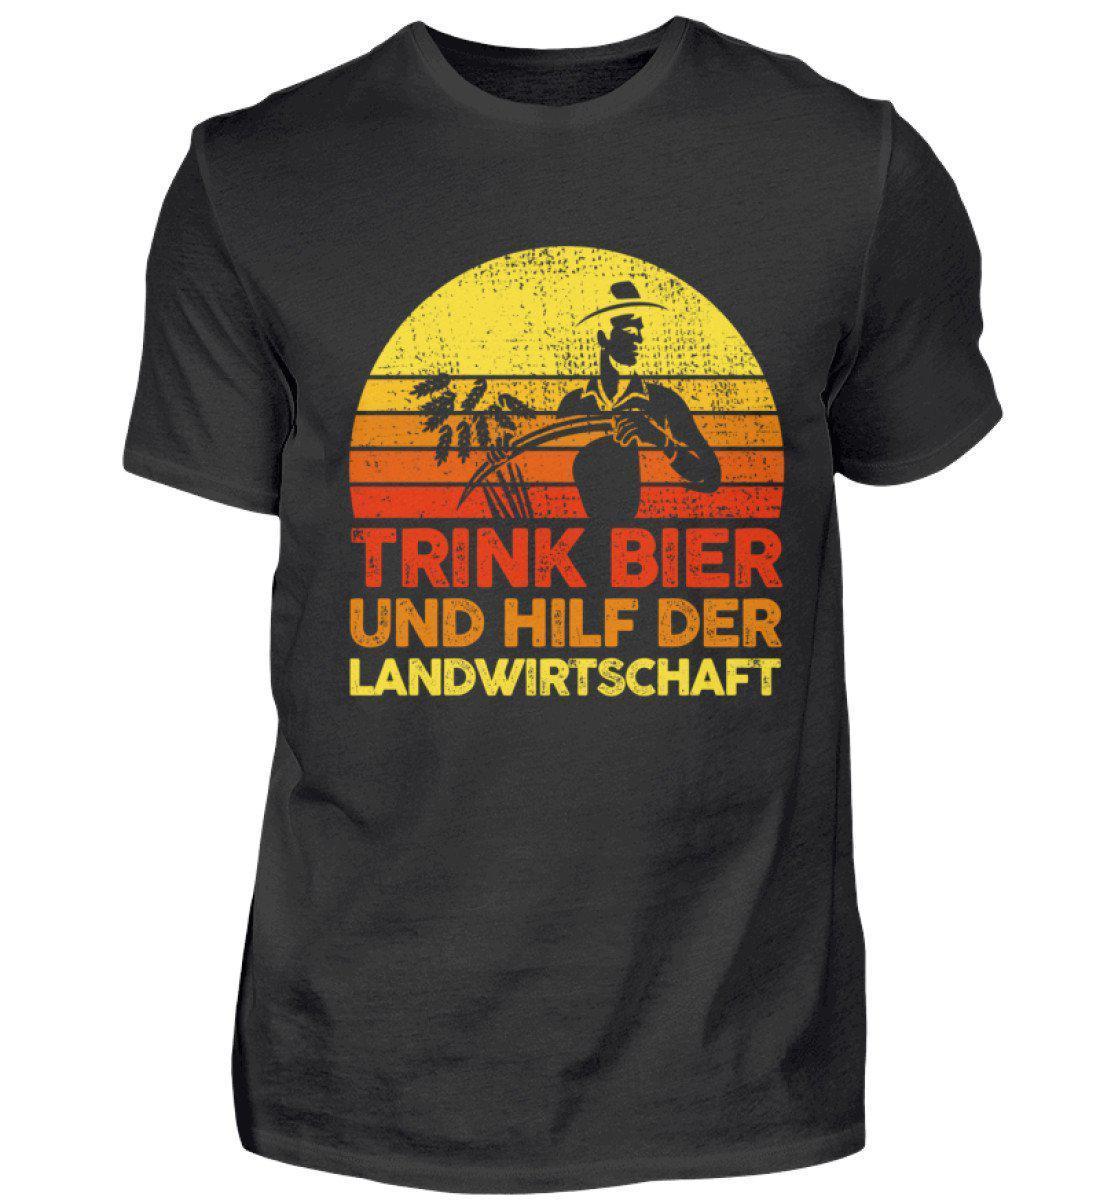 Trink Bier hilf Landwirtschaft Retro · Herren T-Shirt-Herren Basic T-Shirt-Black-S-Agrarstarz